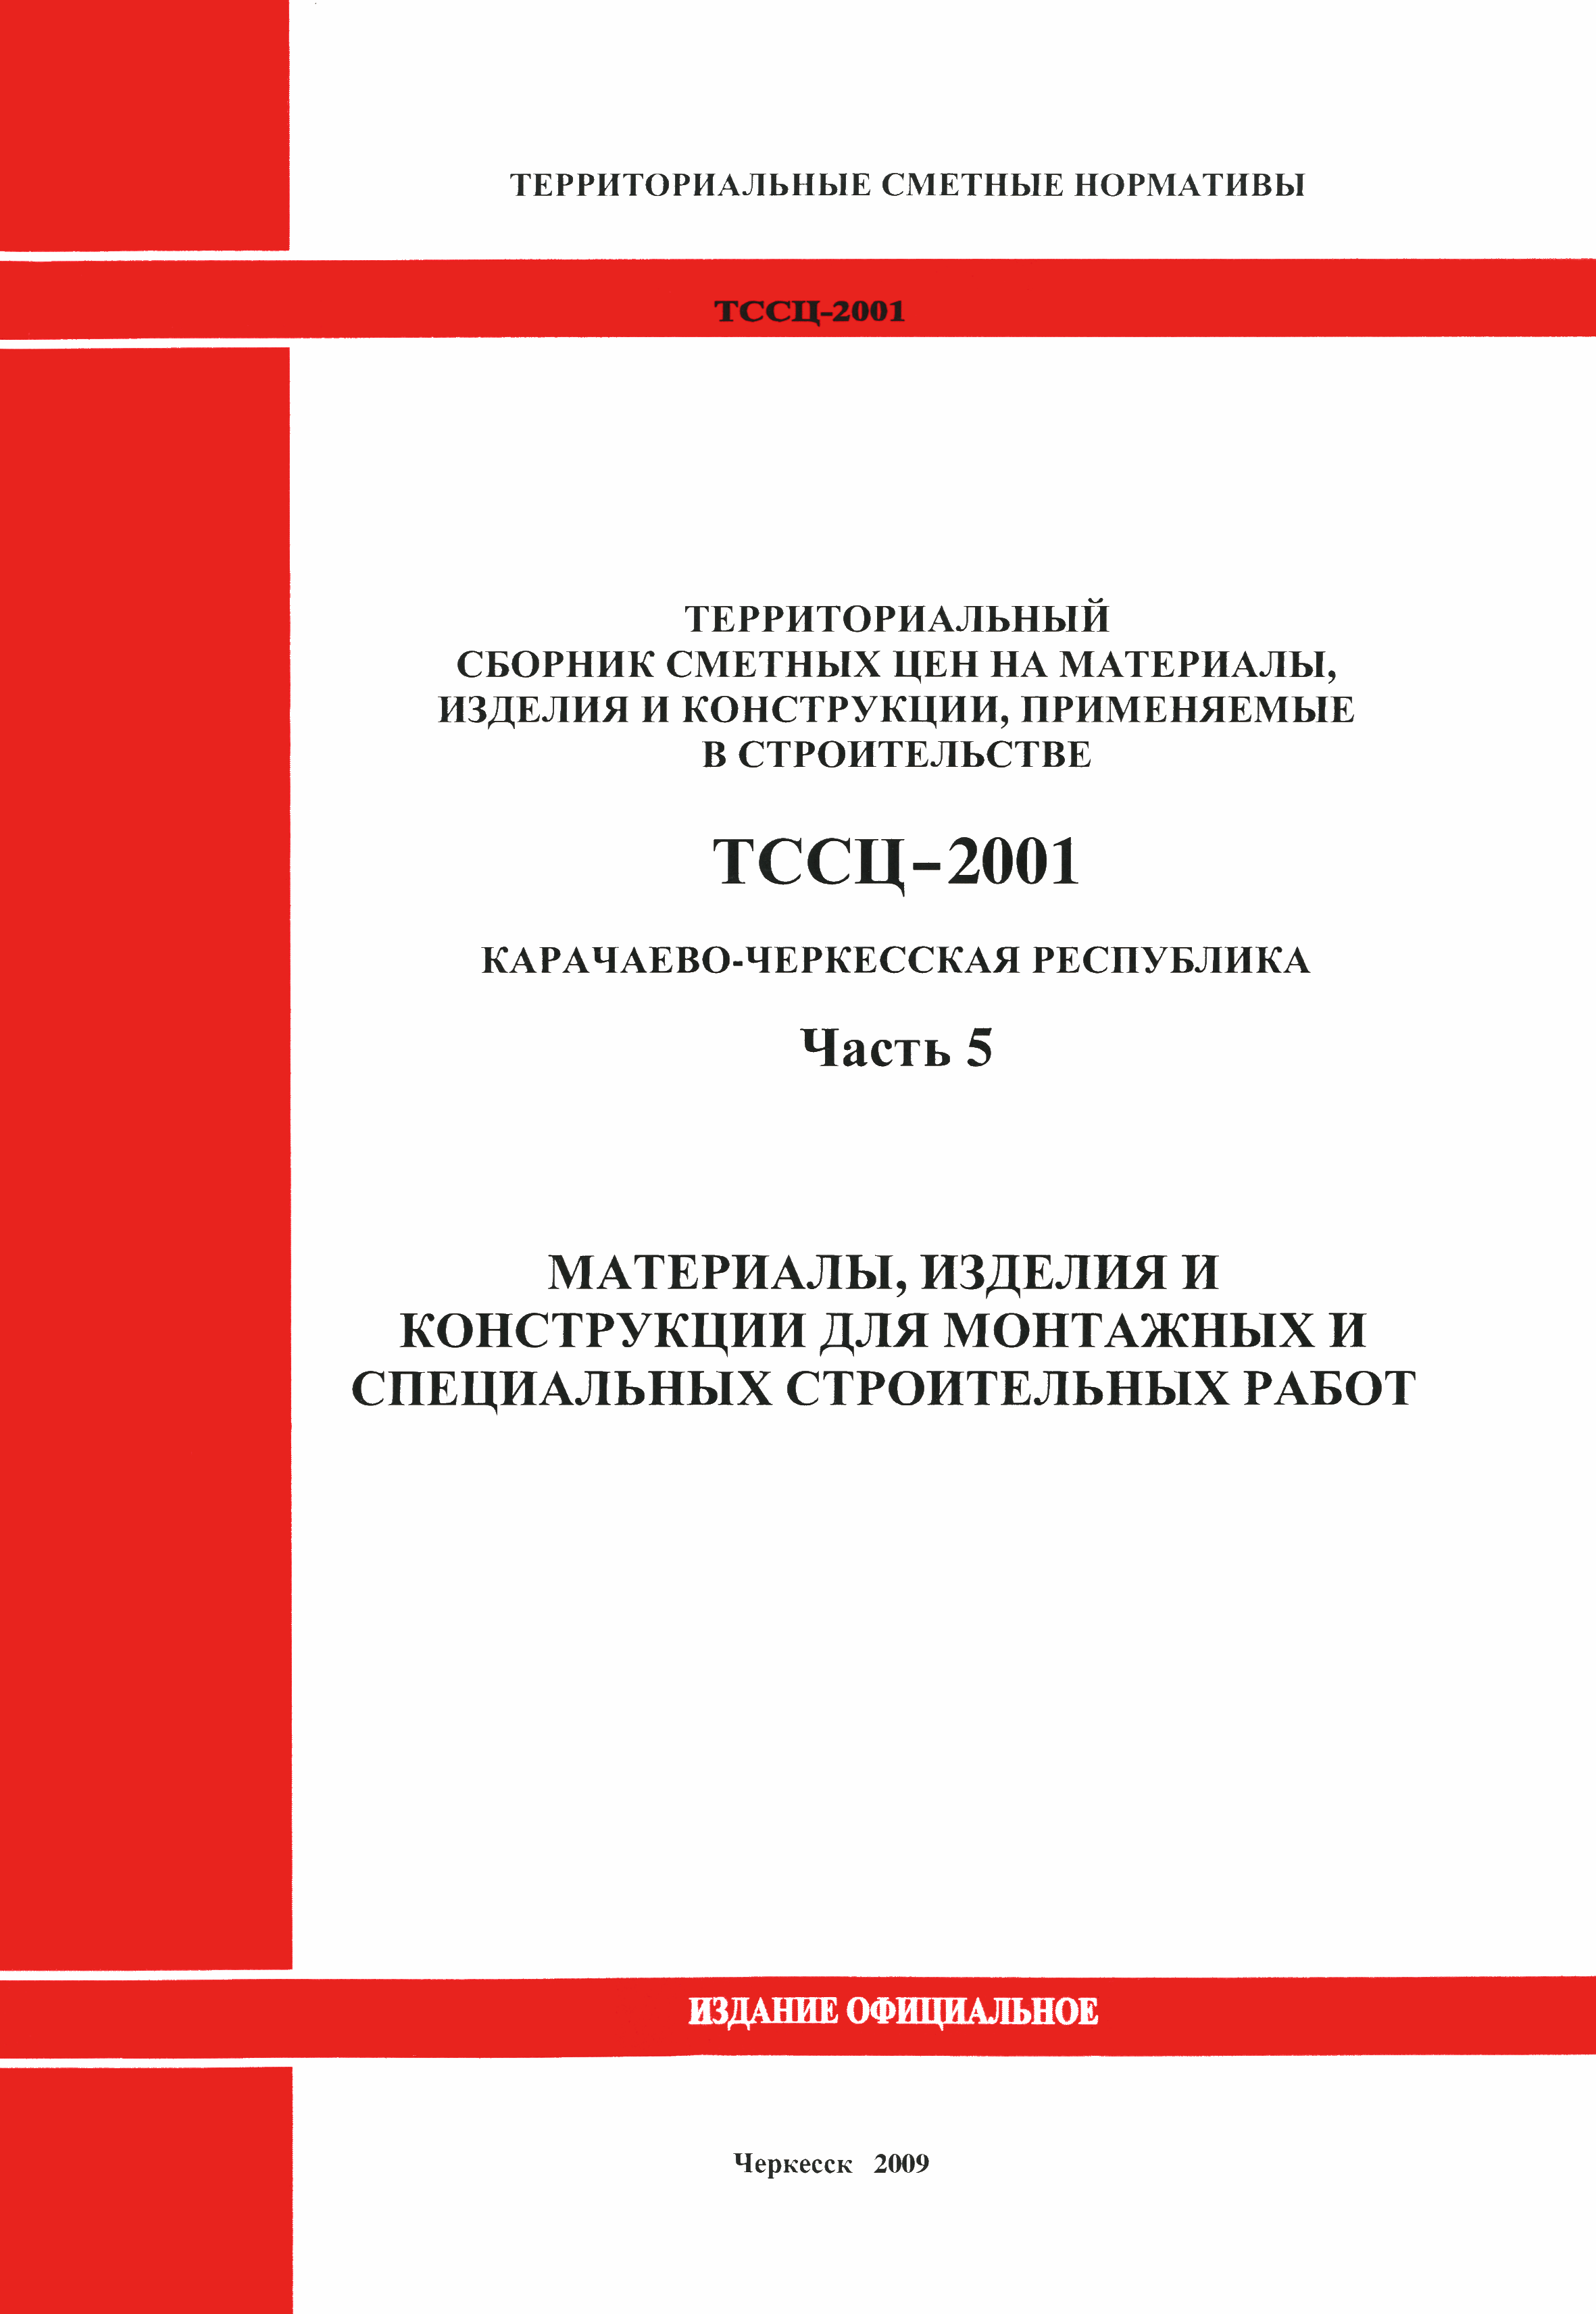 ТССЦ Карачаево-Черкесская Республика 05-2001